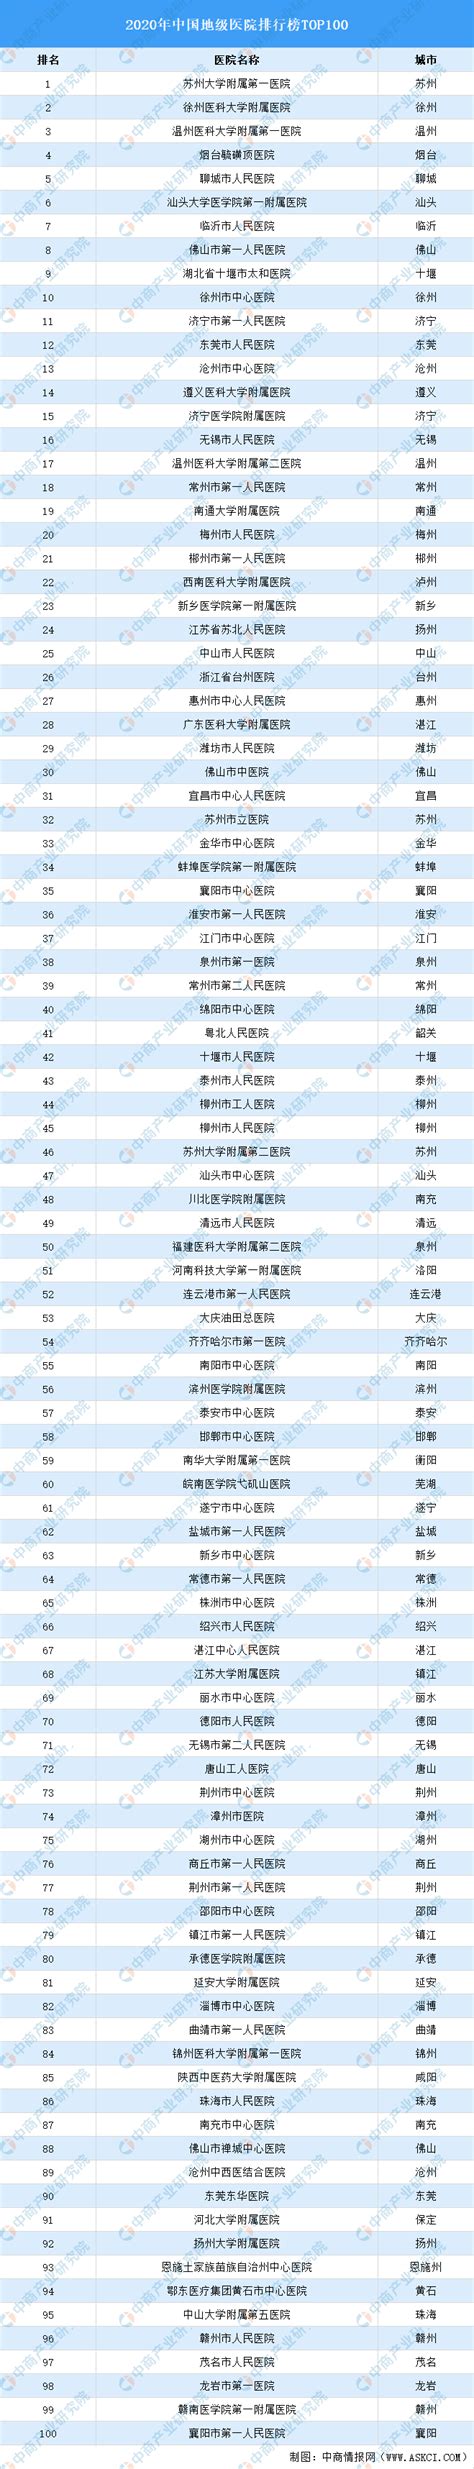 2020年中国地级医院排行榜TOP100-排行榜-中商情报网